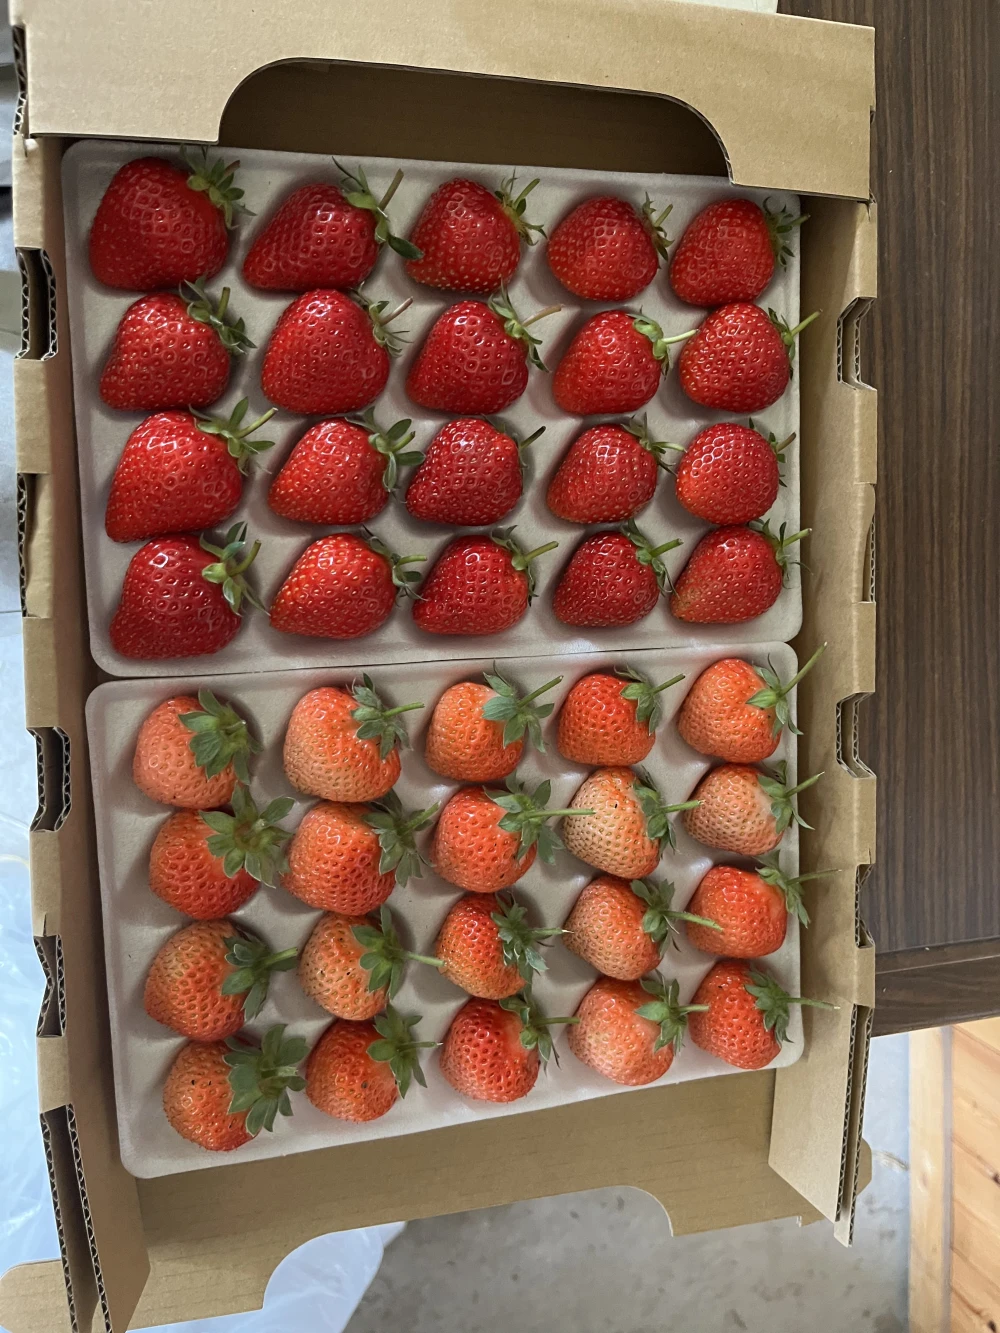 北海道産完熟夏イチゴ1箱20玉×2トレー